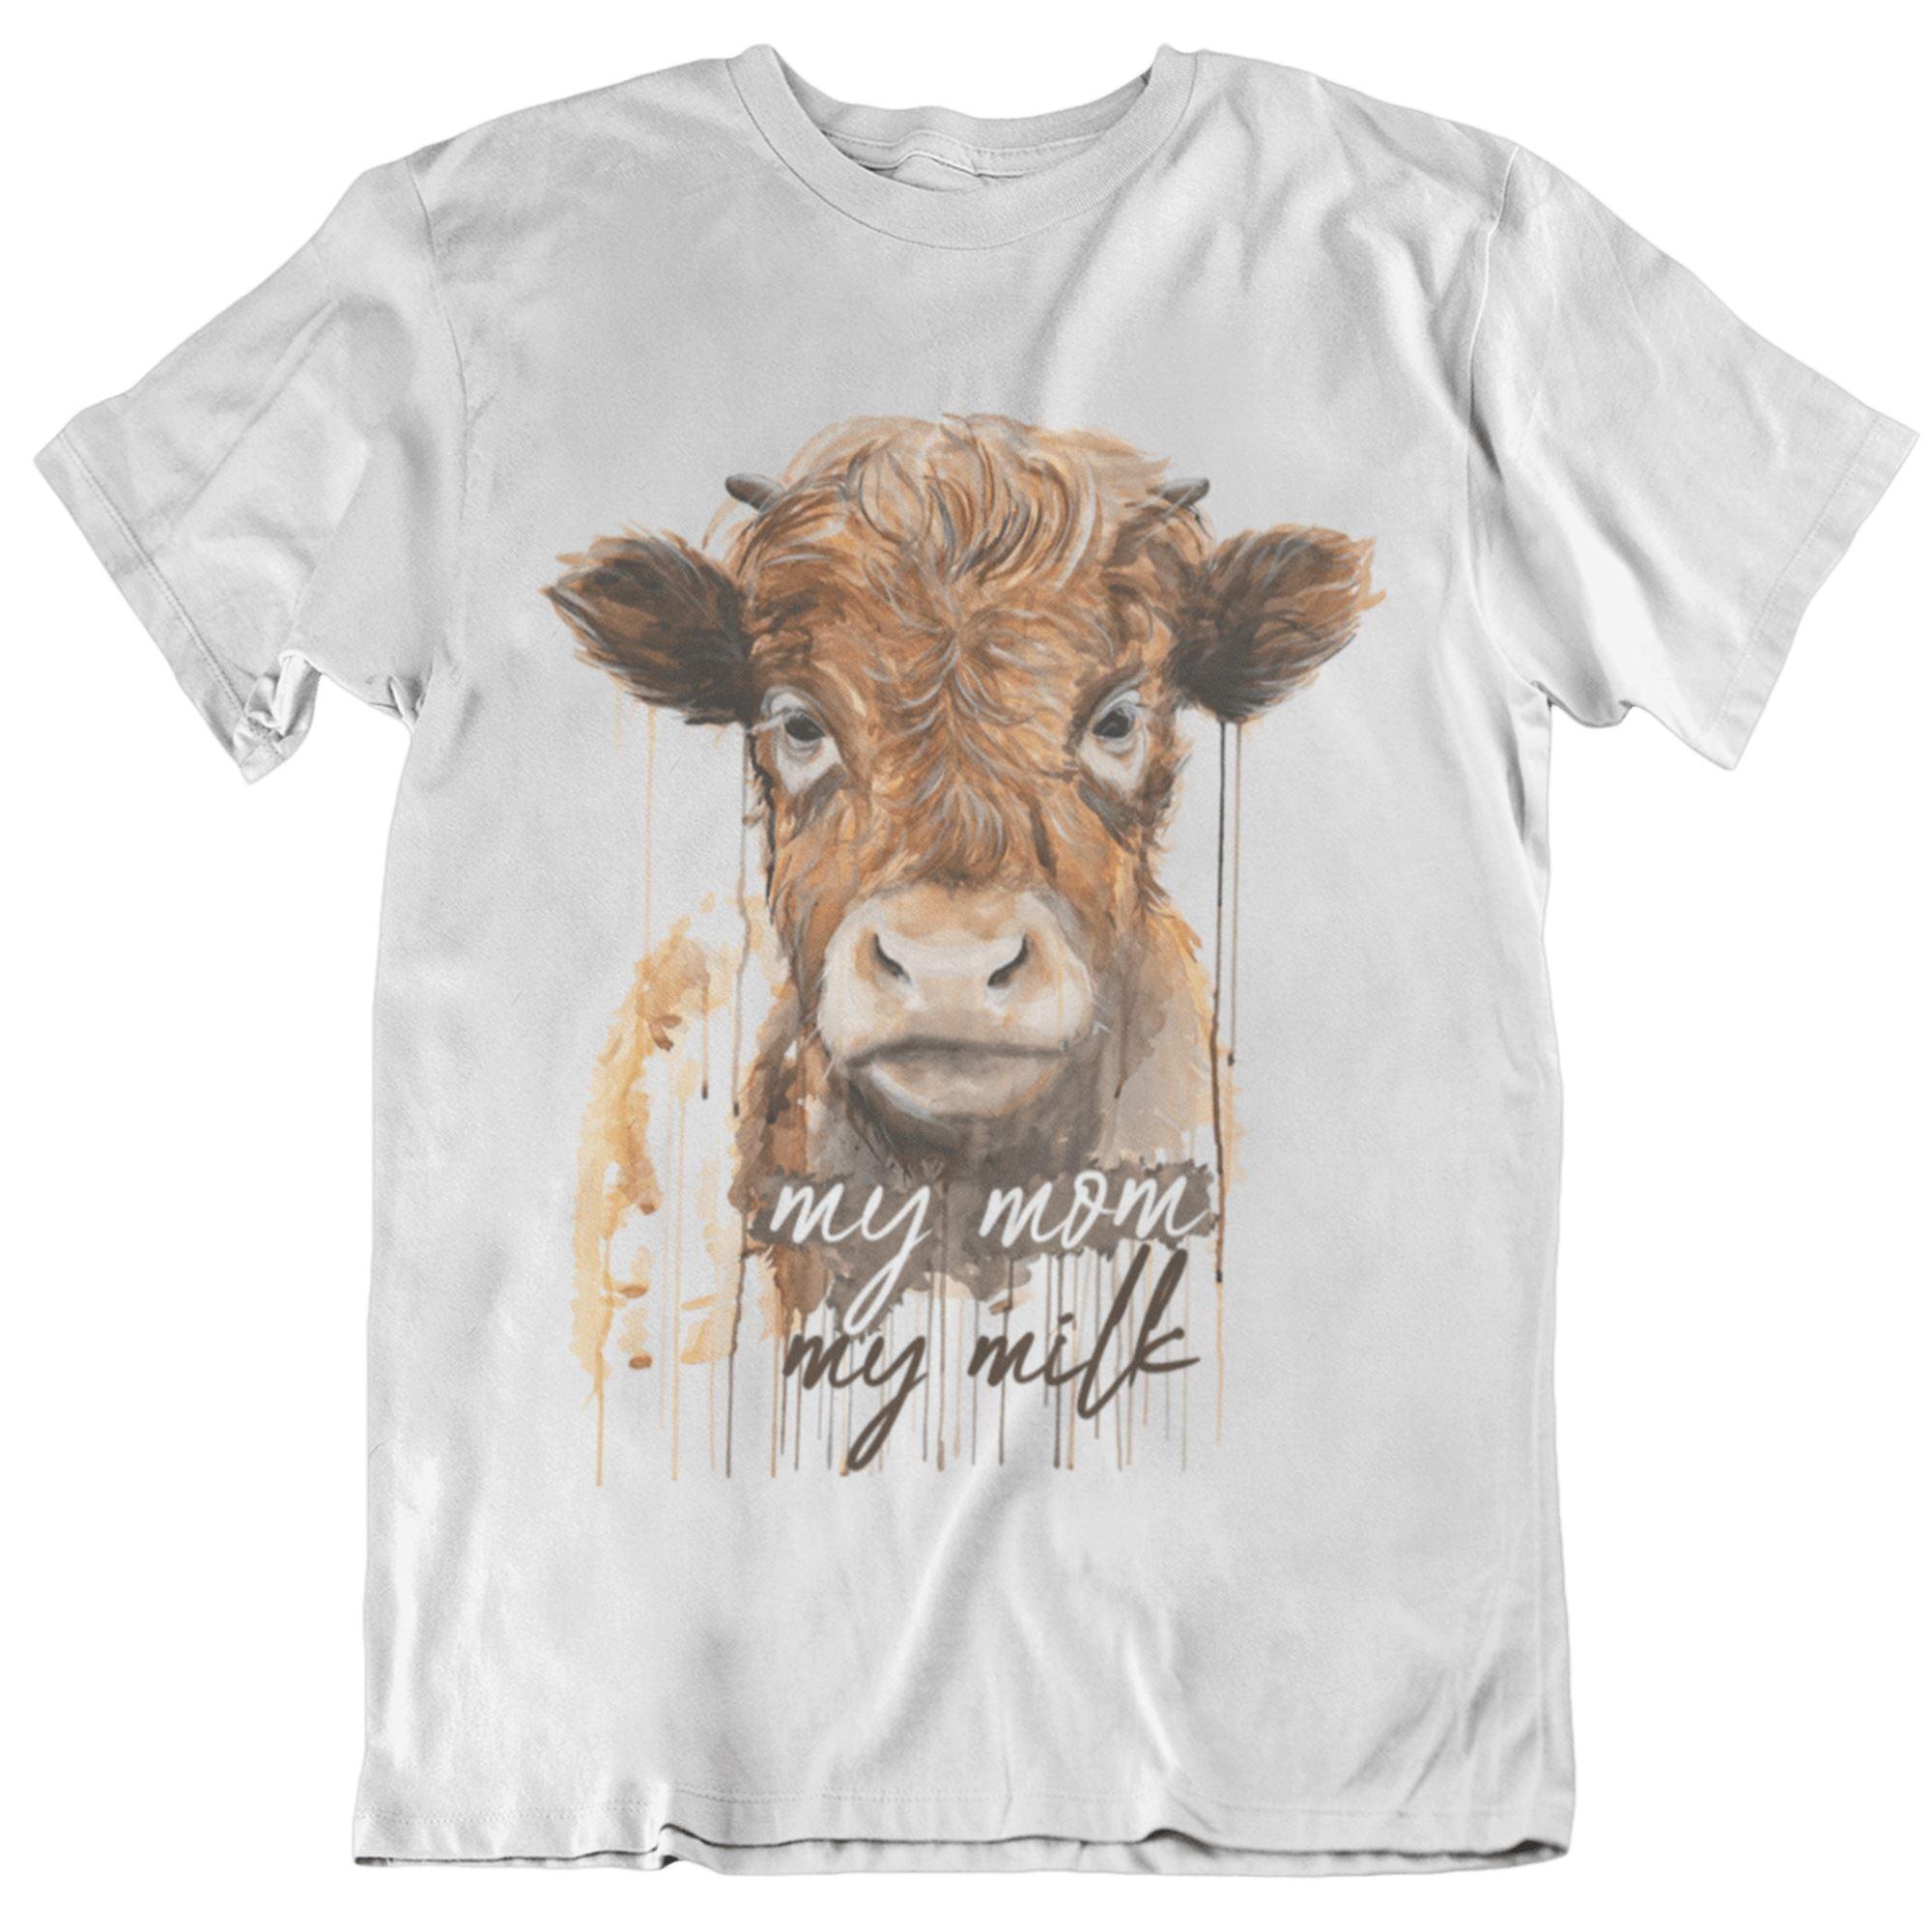 My mom my milk [ayla.phoenix.art] - Unisex Organic Shirt - Team Vegan © vegan t shirt